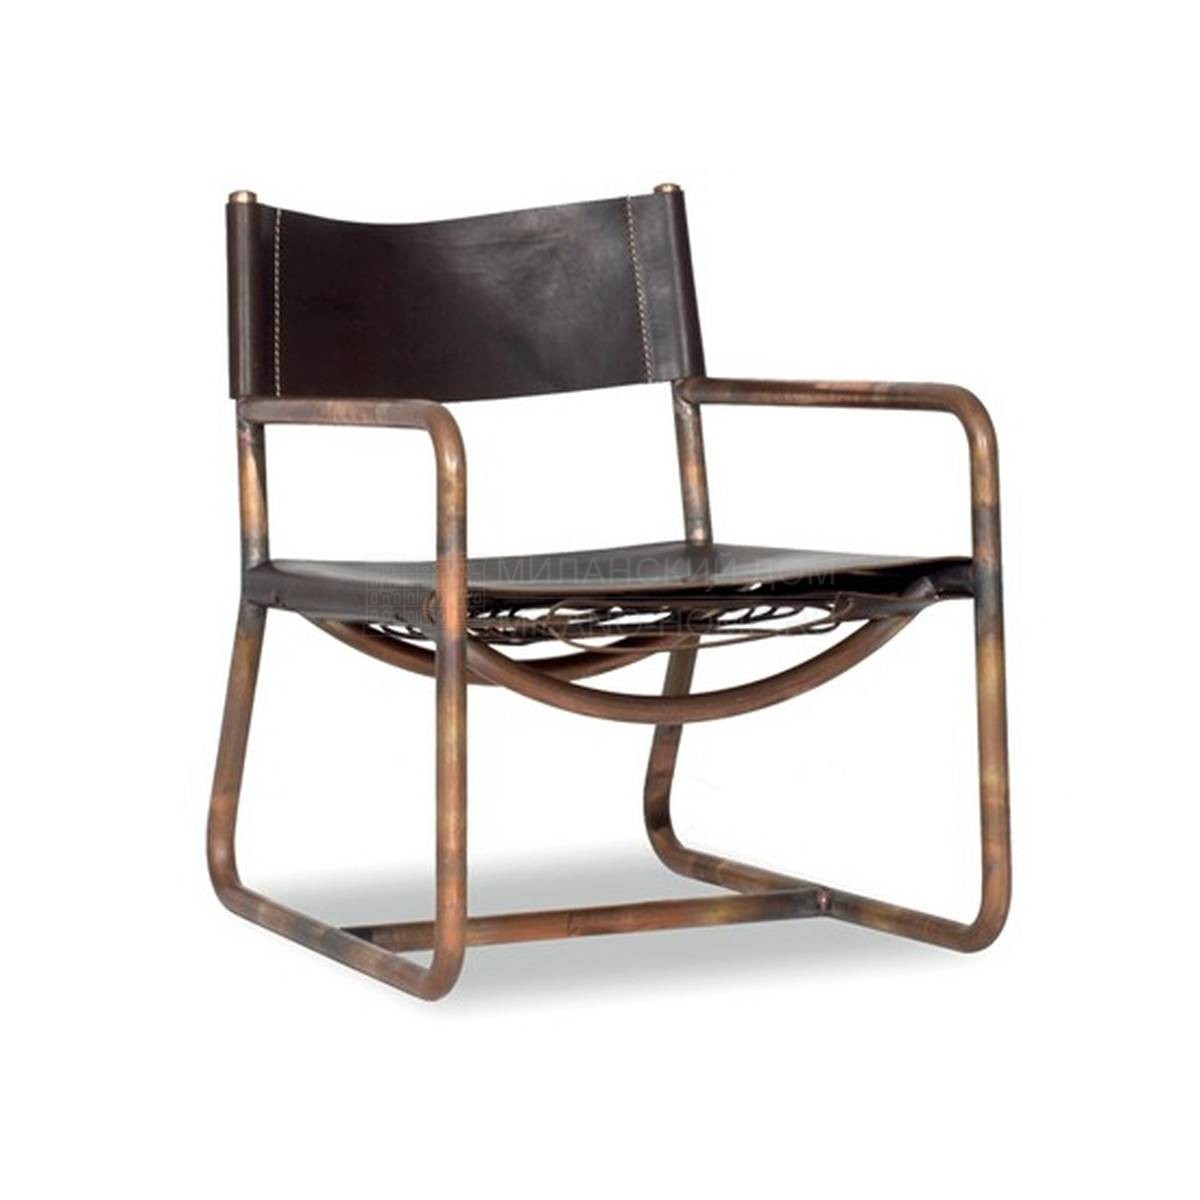 Полукресло Rimini chair из Италии фабрики BAXTER